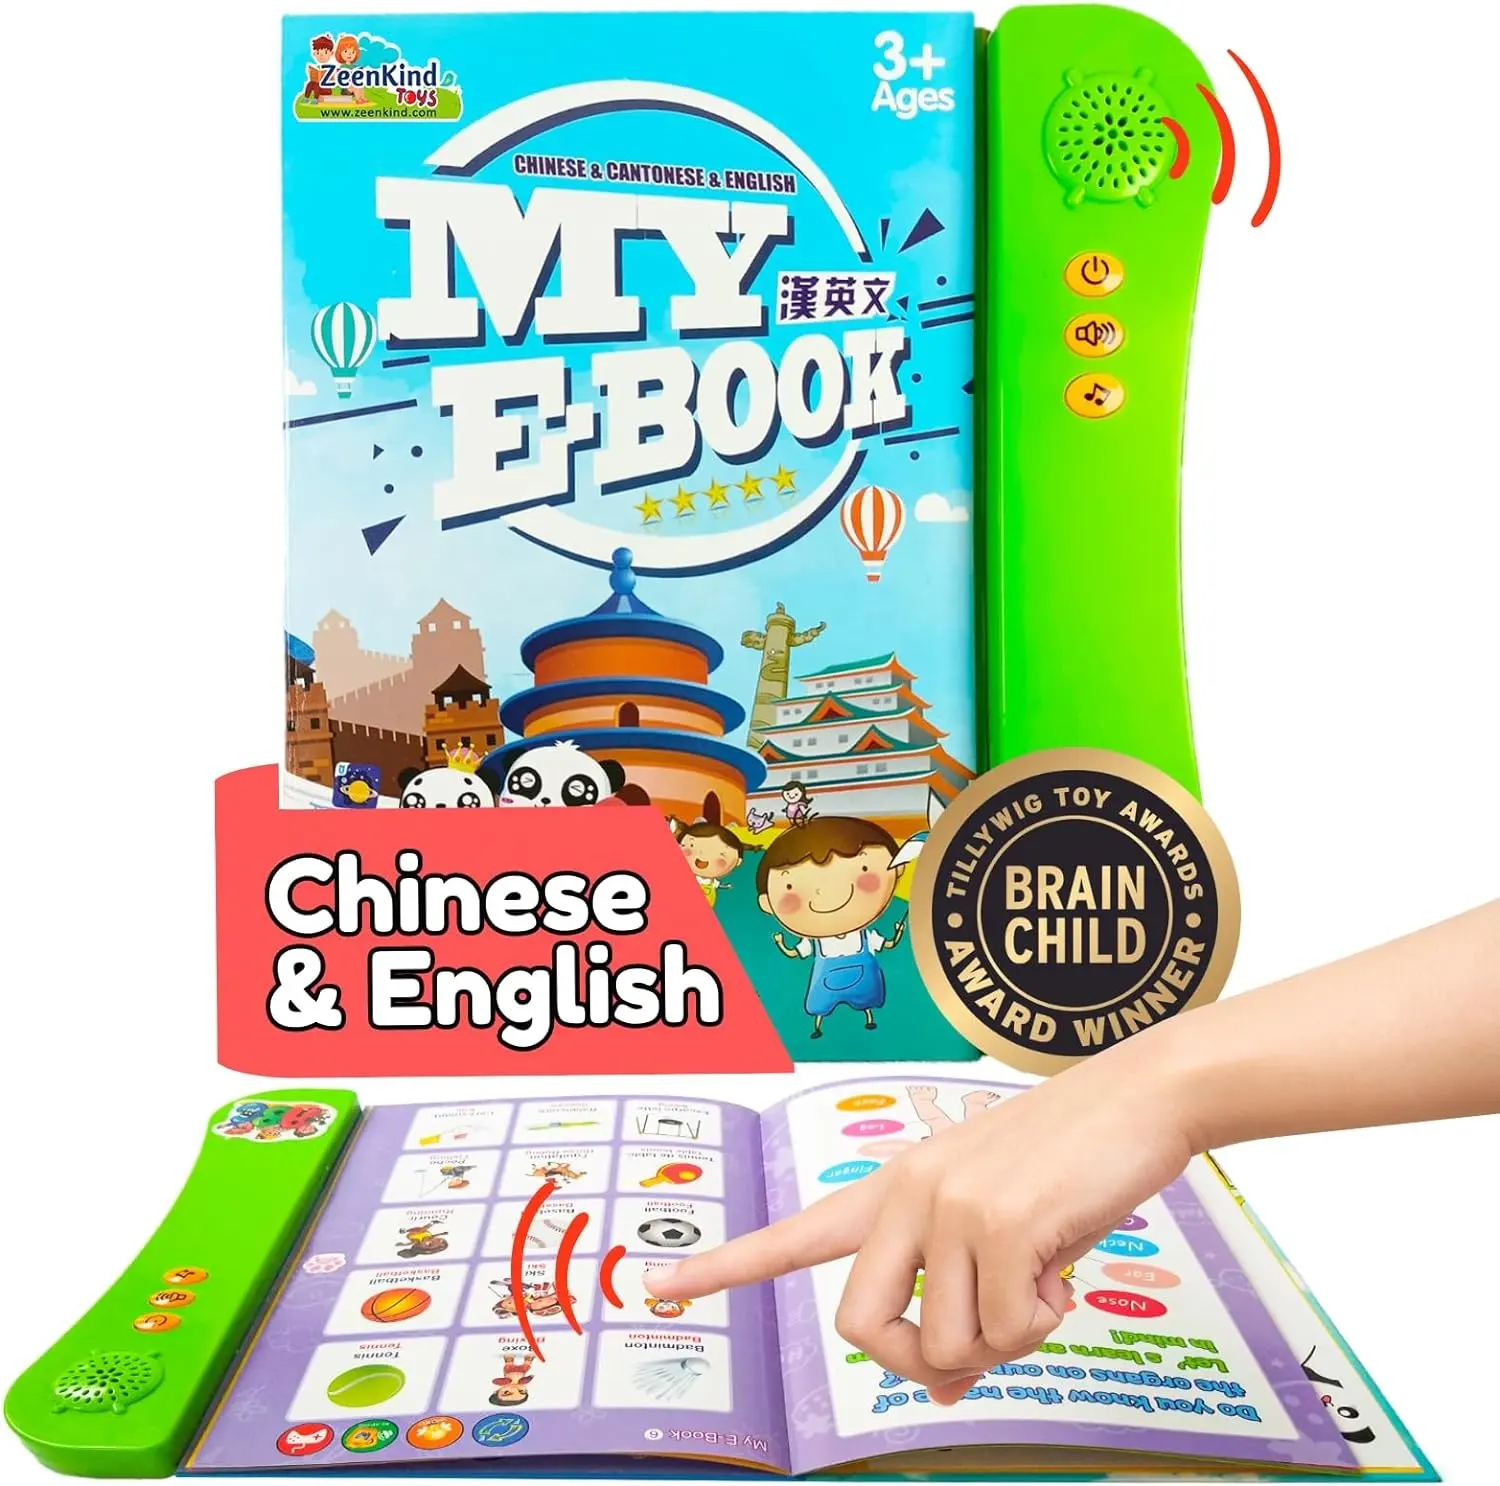 หัดเรียนรู้หนังสือเด็กสองภาษาภาษาอังกฤษจีน หนังสือเสียงแบบโต้ตอบเพื่อการเรียนรู้ภาษาจีนจีนพินยิน ภาษาอังกฤษแบบจีน